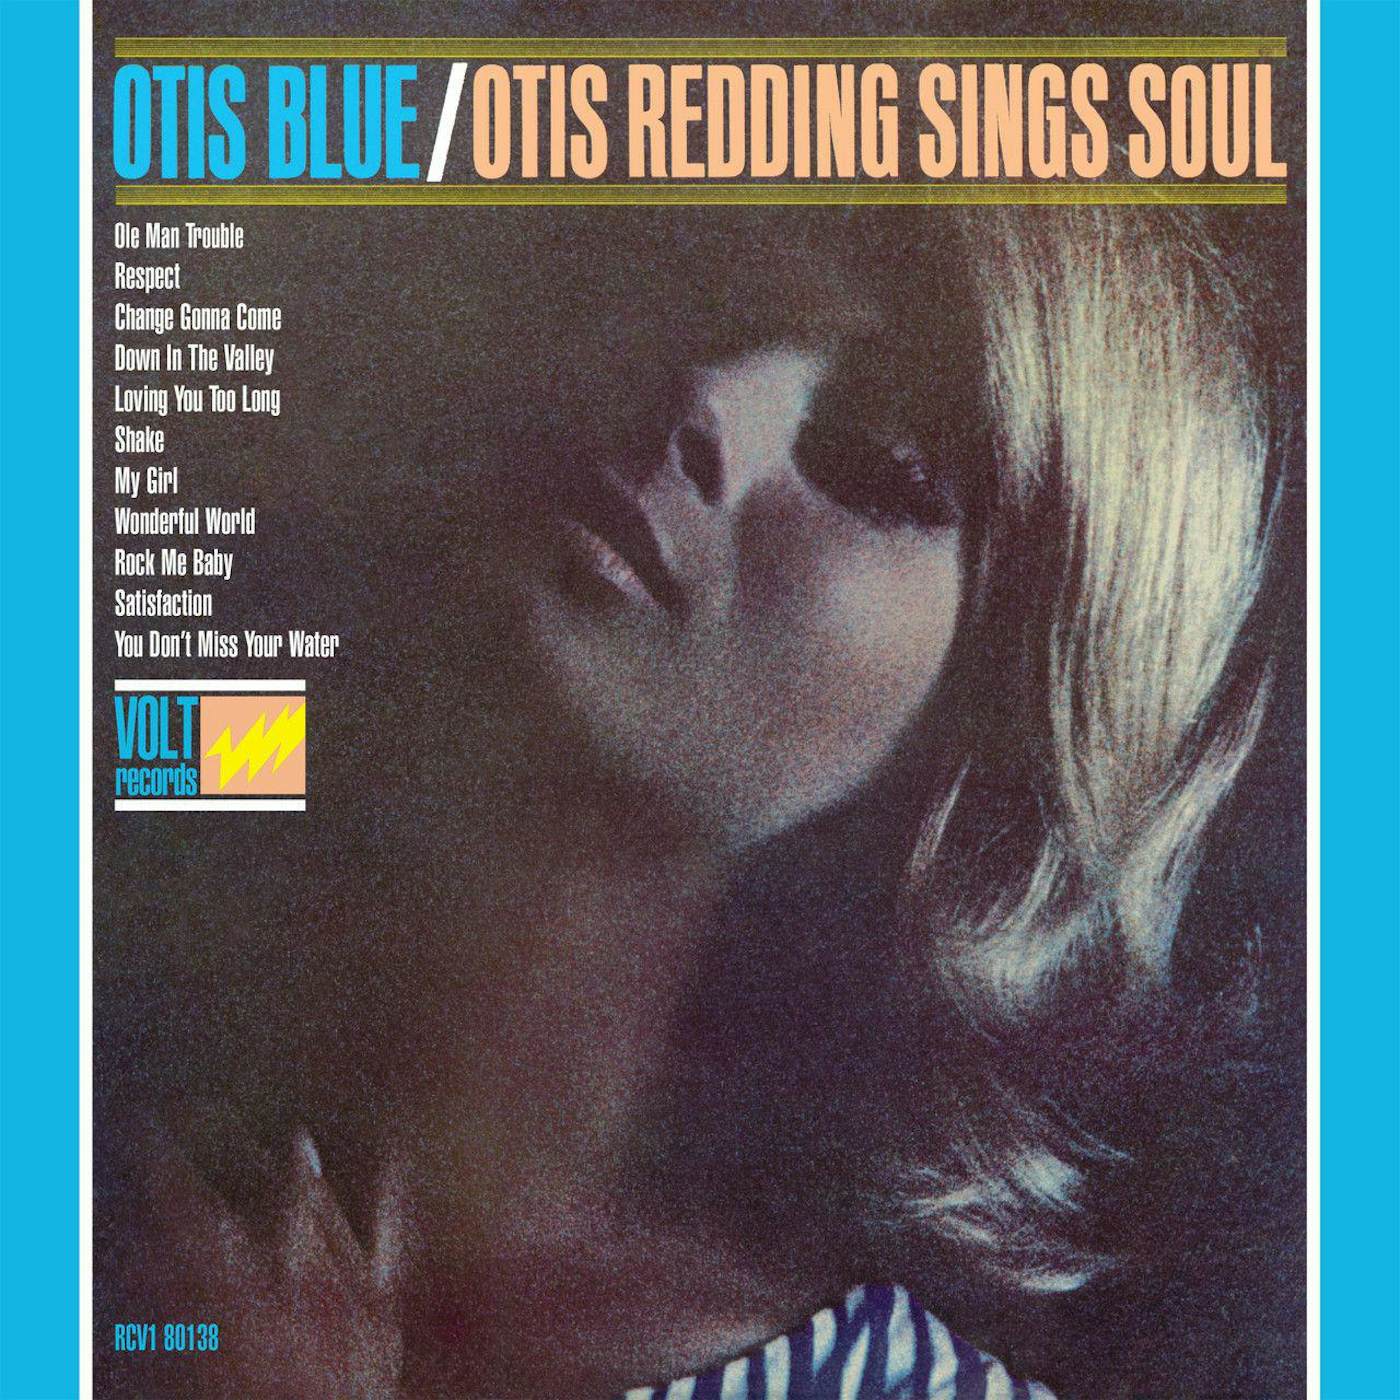 Otis Blue: Otis Redding Sings Soul Vinyl Record